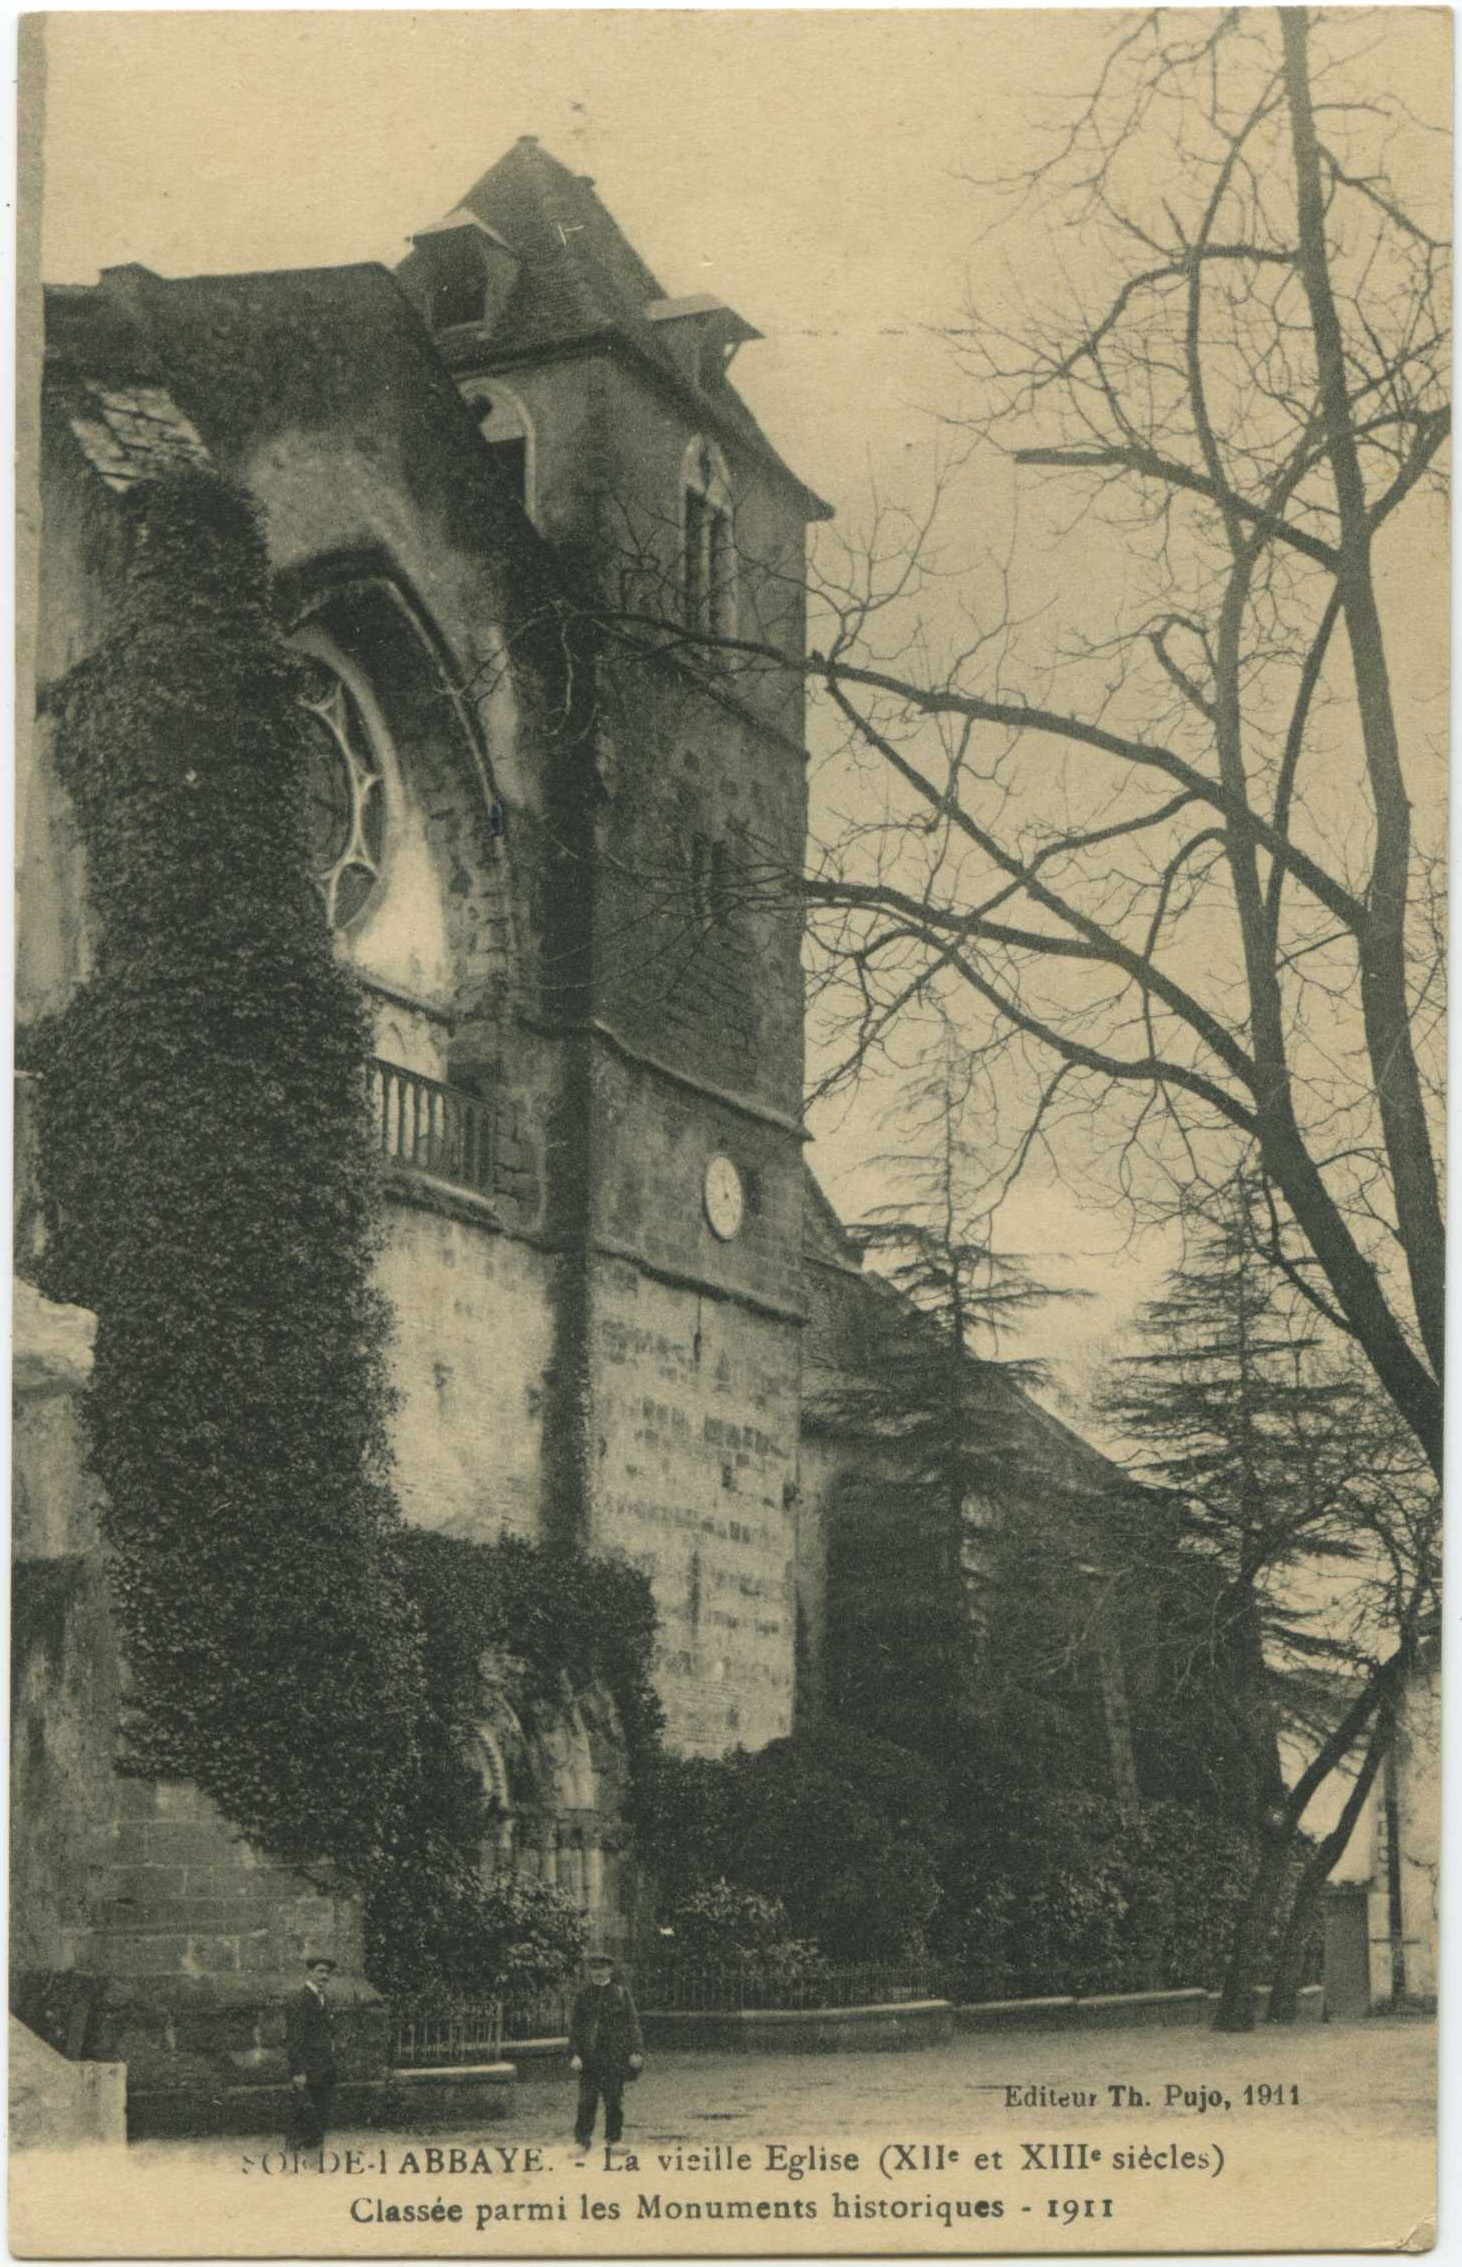 Sorde-l'Abbaye - La vieille Eglise (XII<sup>e</sup> et XIII<sup>e</sup> siècles). Classée parmi les Monuments historiques  - 1911